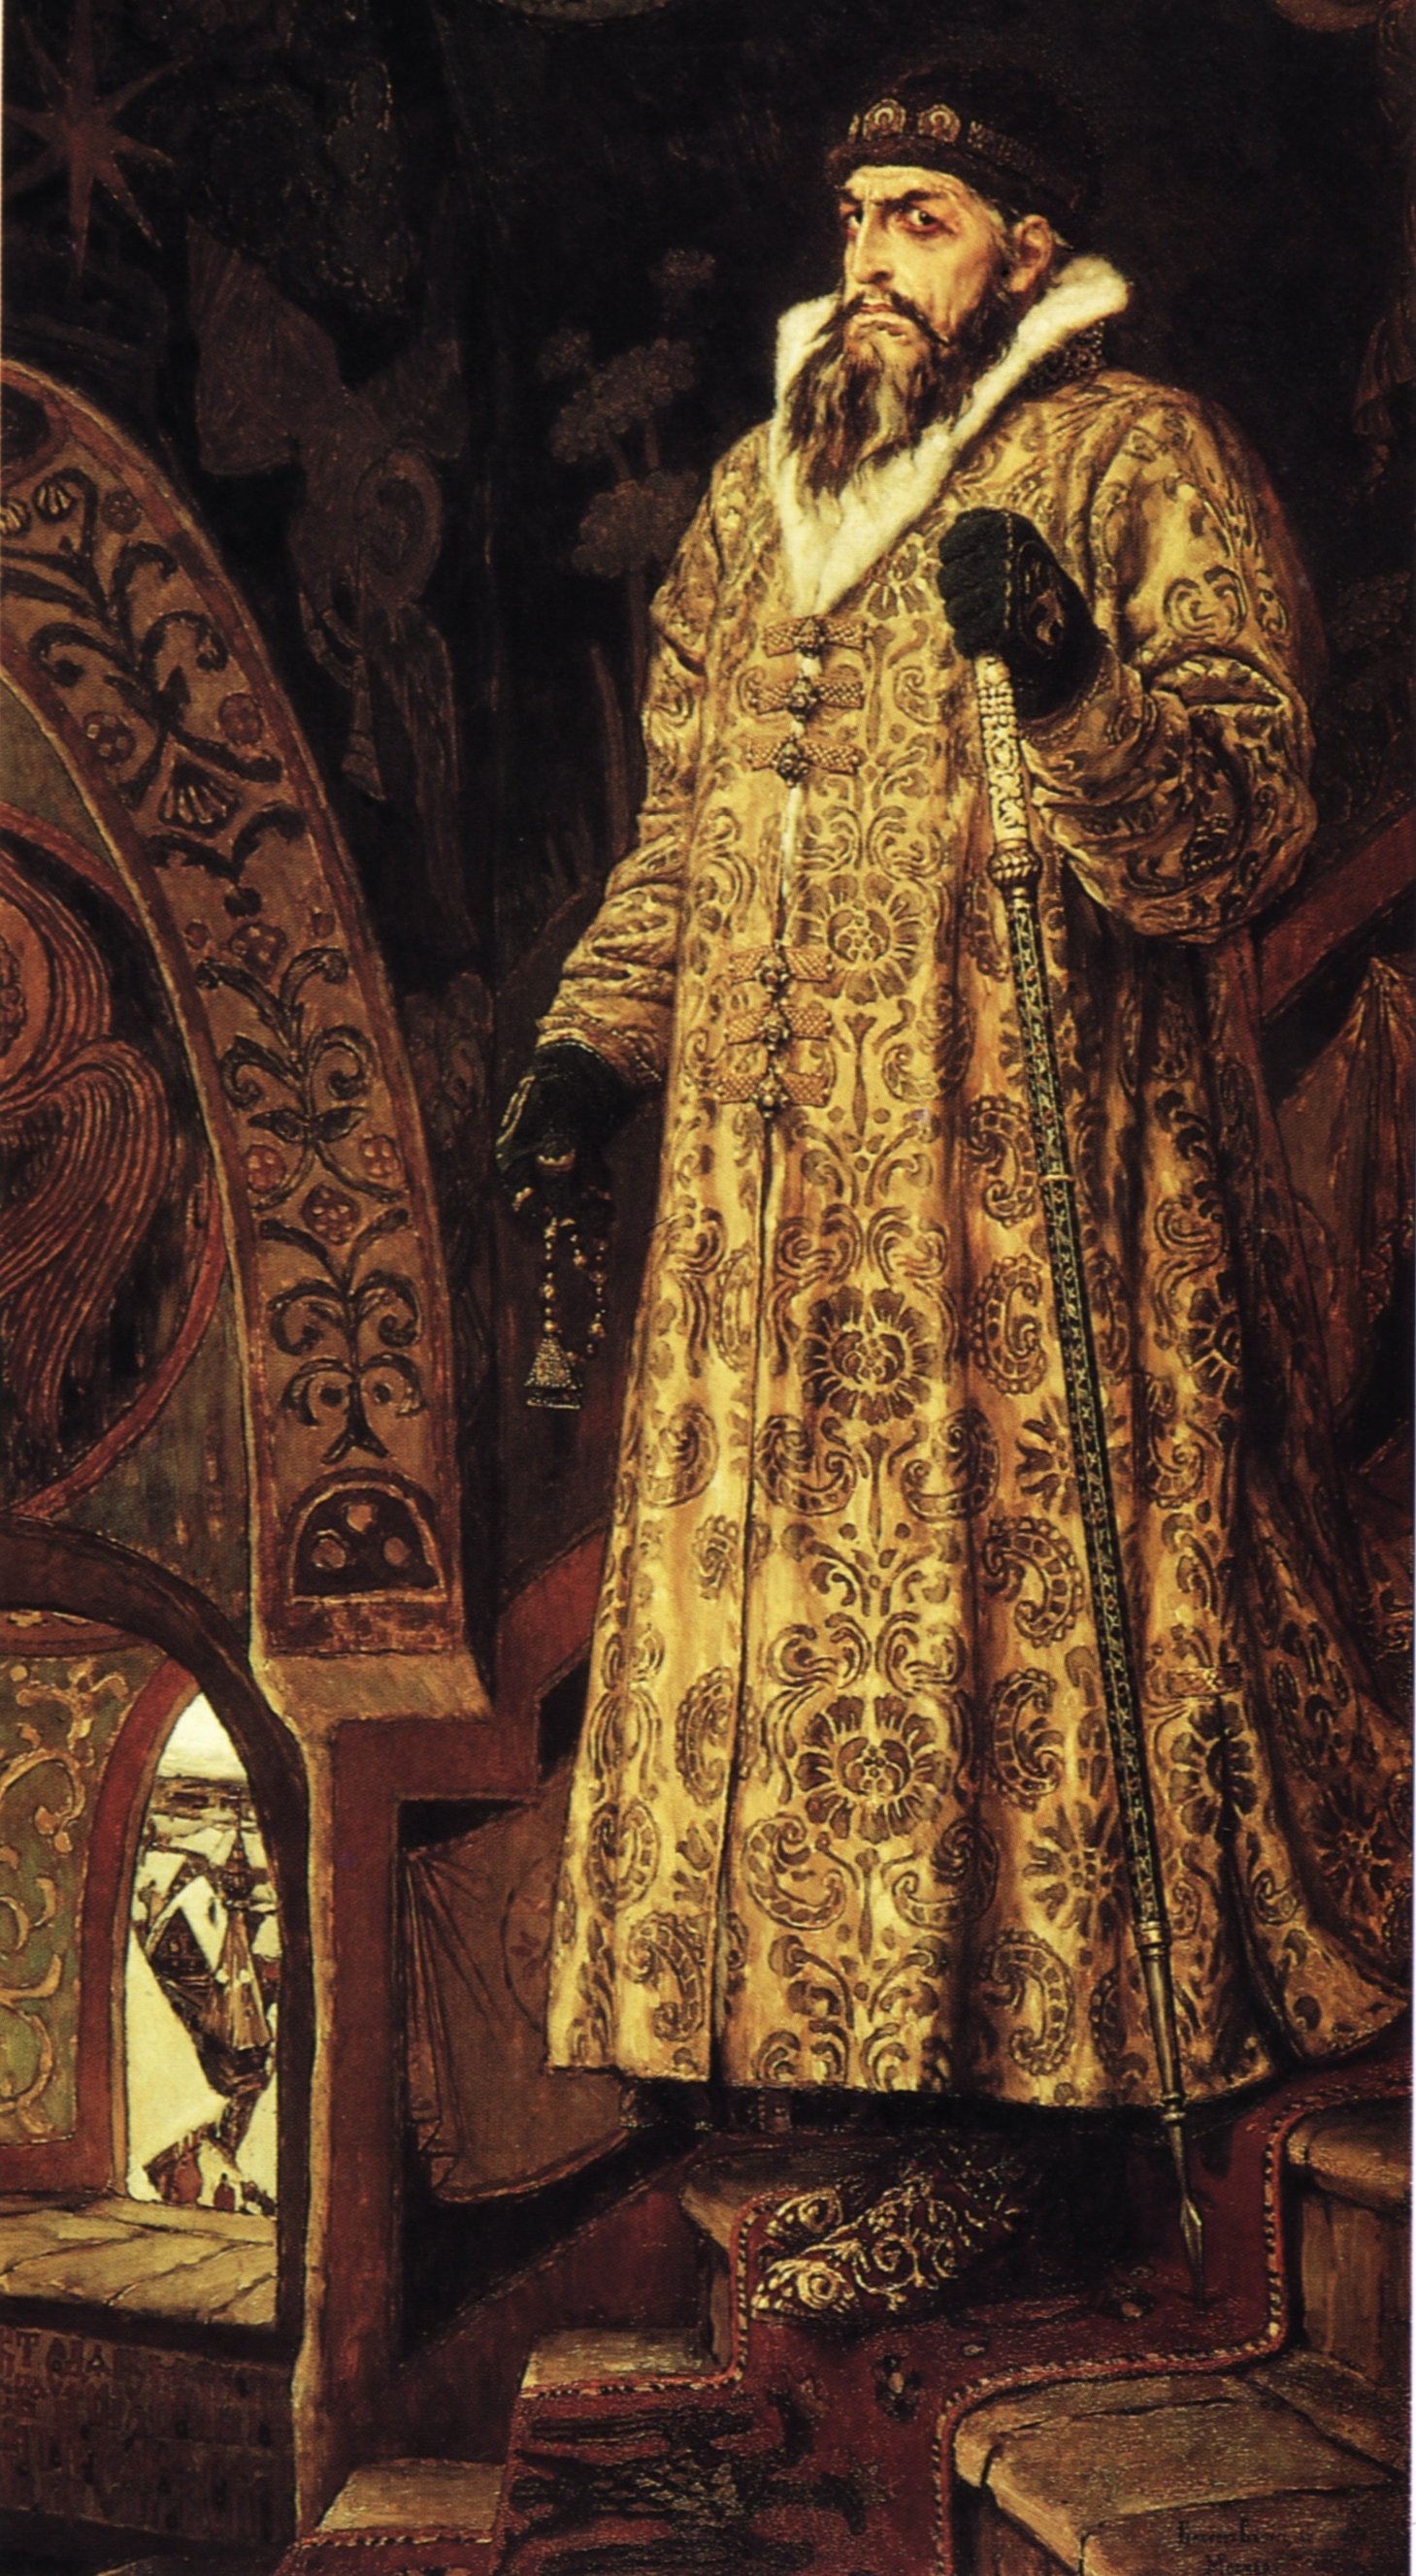 Portrait of Ivan IV by Viktor Vasnetsov, 1897 (Tretyakov Gallery, Moscow). Source: Wikipedia.org